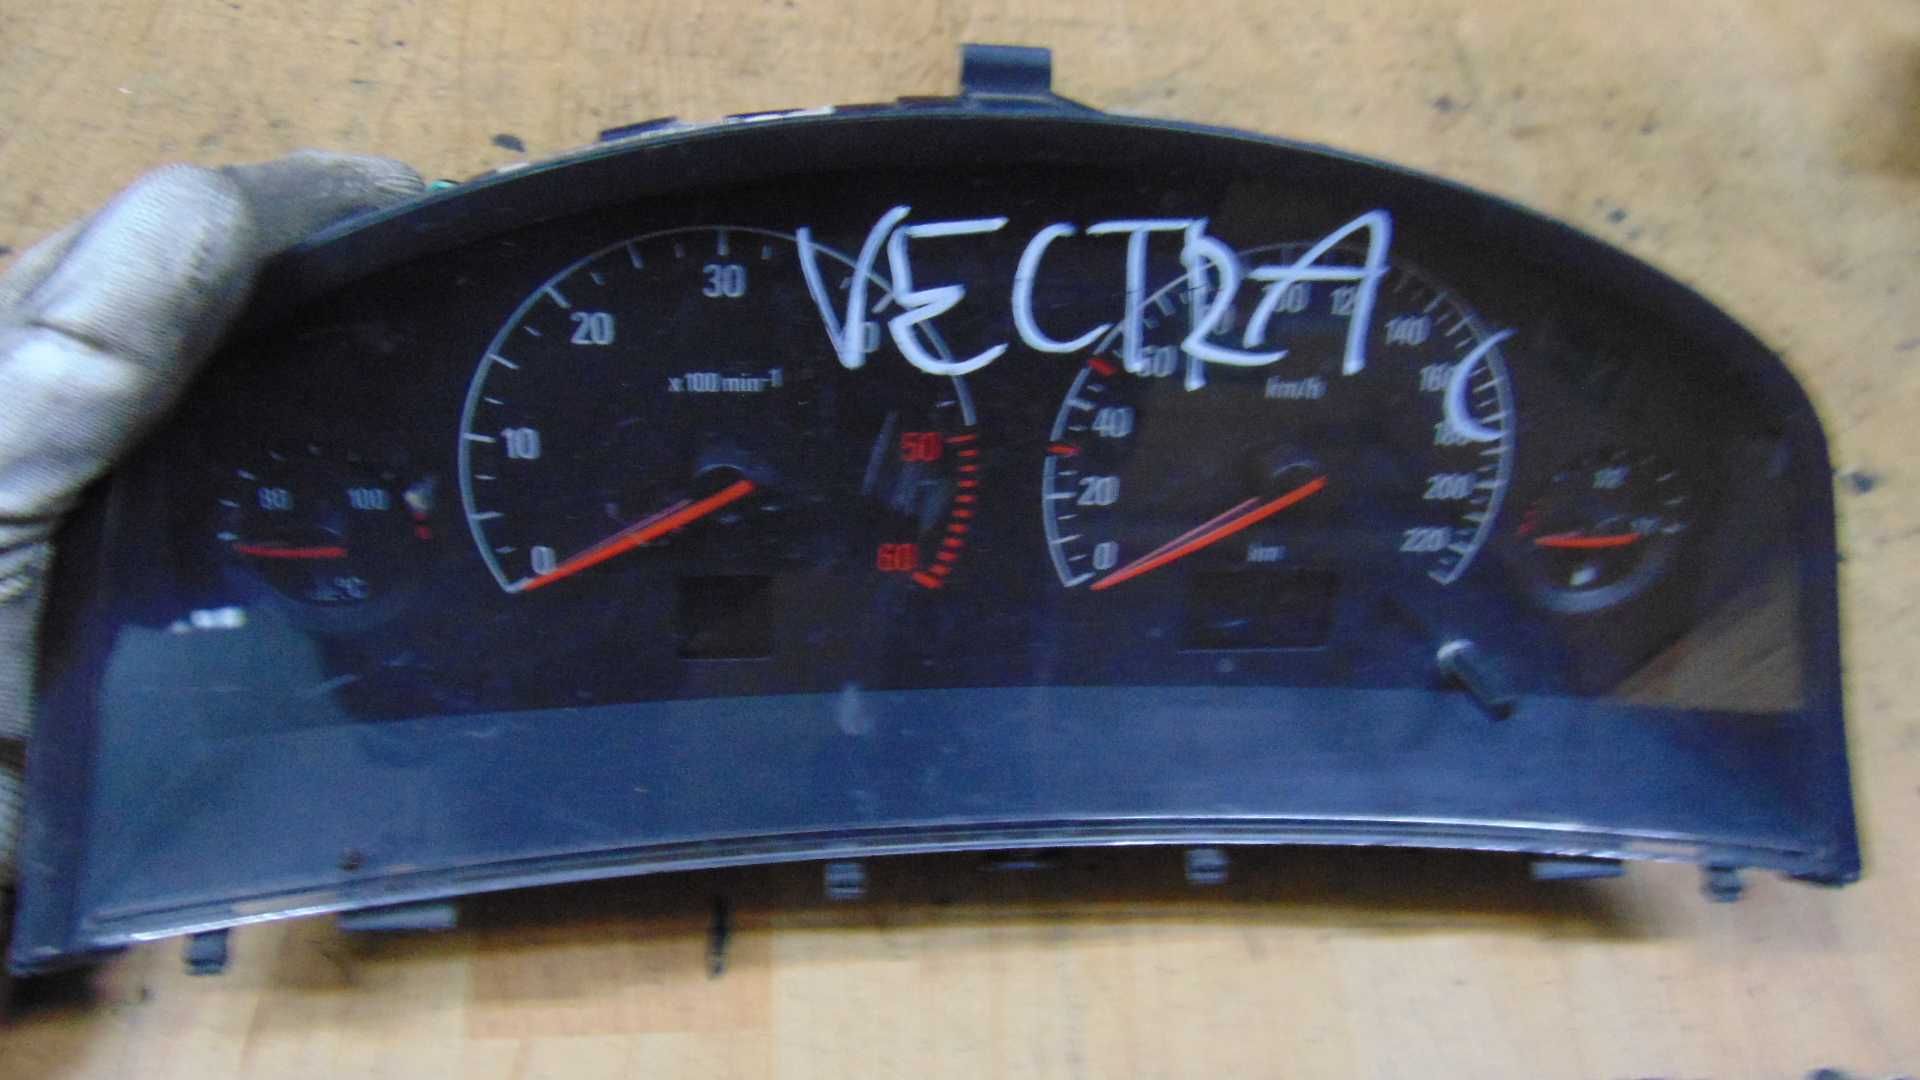 Sty4 Licznik zegary prędkościomierz opel vectra c wysyłka